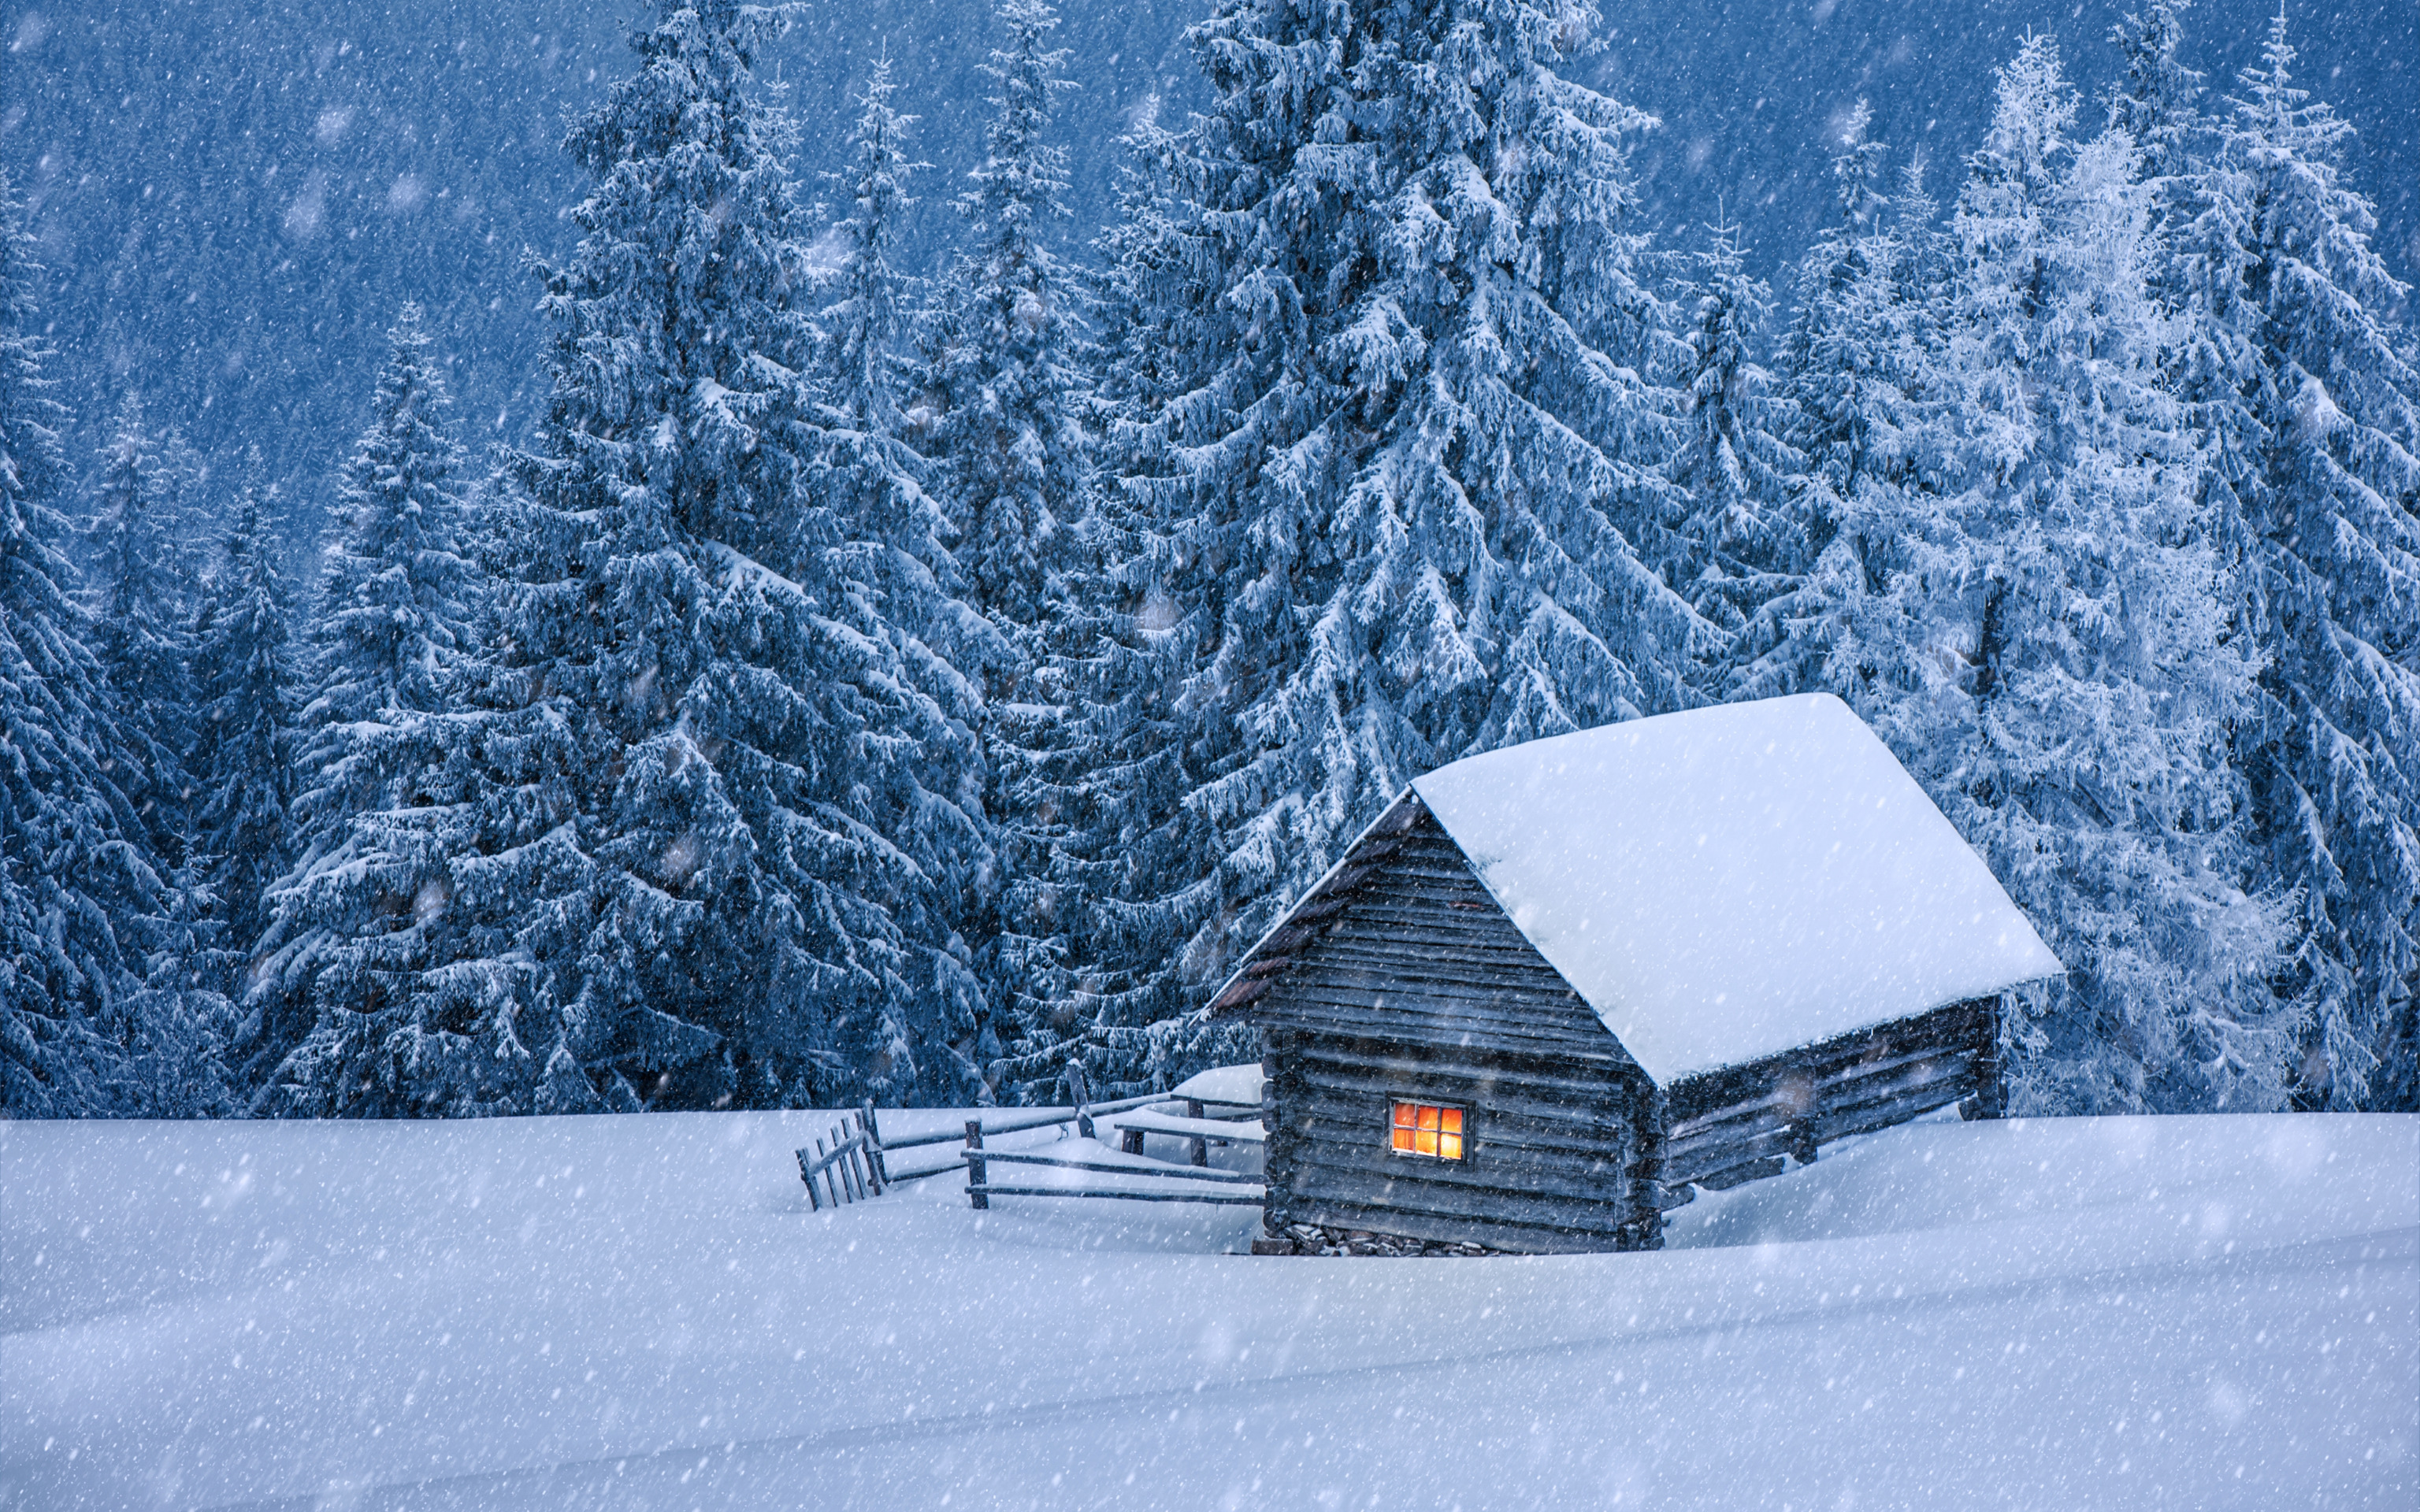 Засыпаны снегом ели. Домик в зимнем лесу. Заснеженный домик в лесу. Зимняя избушка. Зимний пейзаж с домиком.